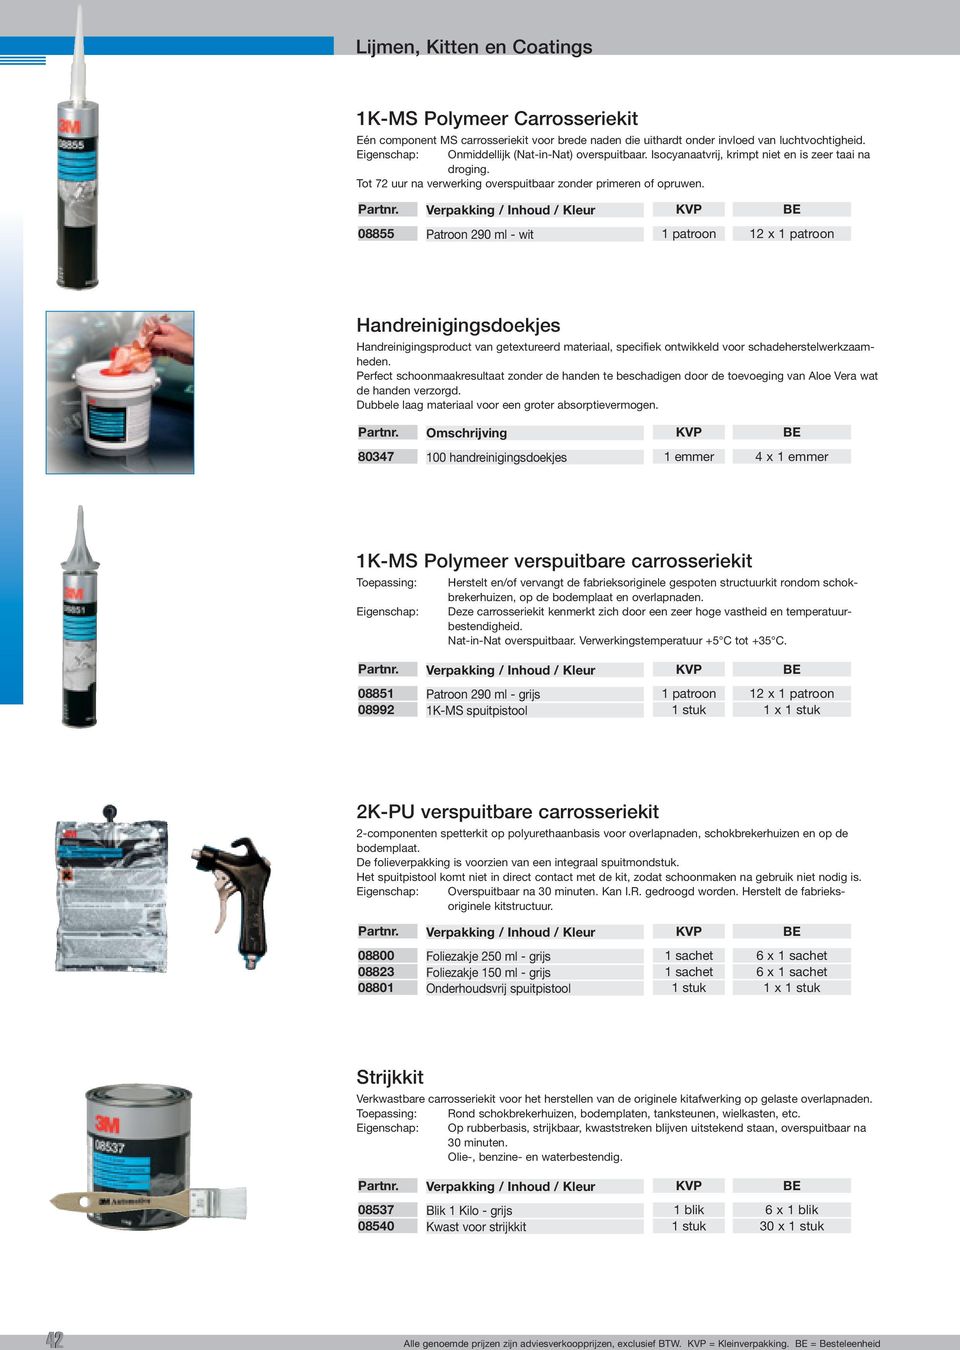 08855 Patroon 290 ml - wit Handreinigingsdoekjes Handreinigingsproduct van getextureerd materiaal, specifiek ontwikkeld voor schadeherstelwerkzaamheden.